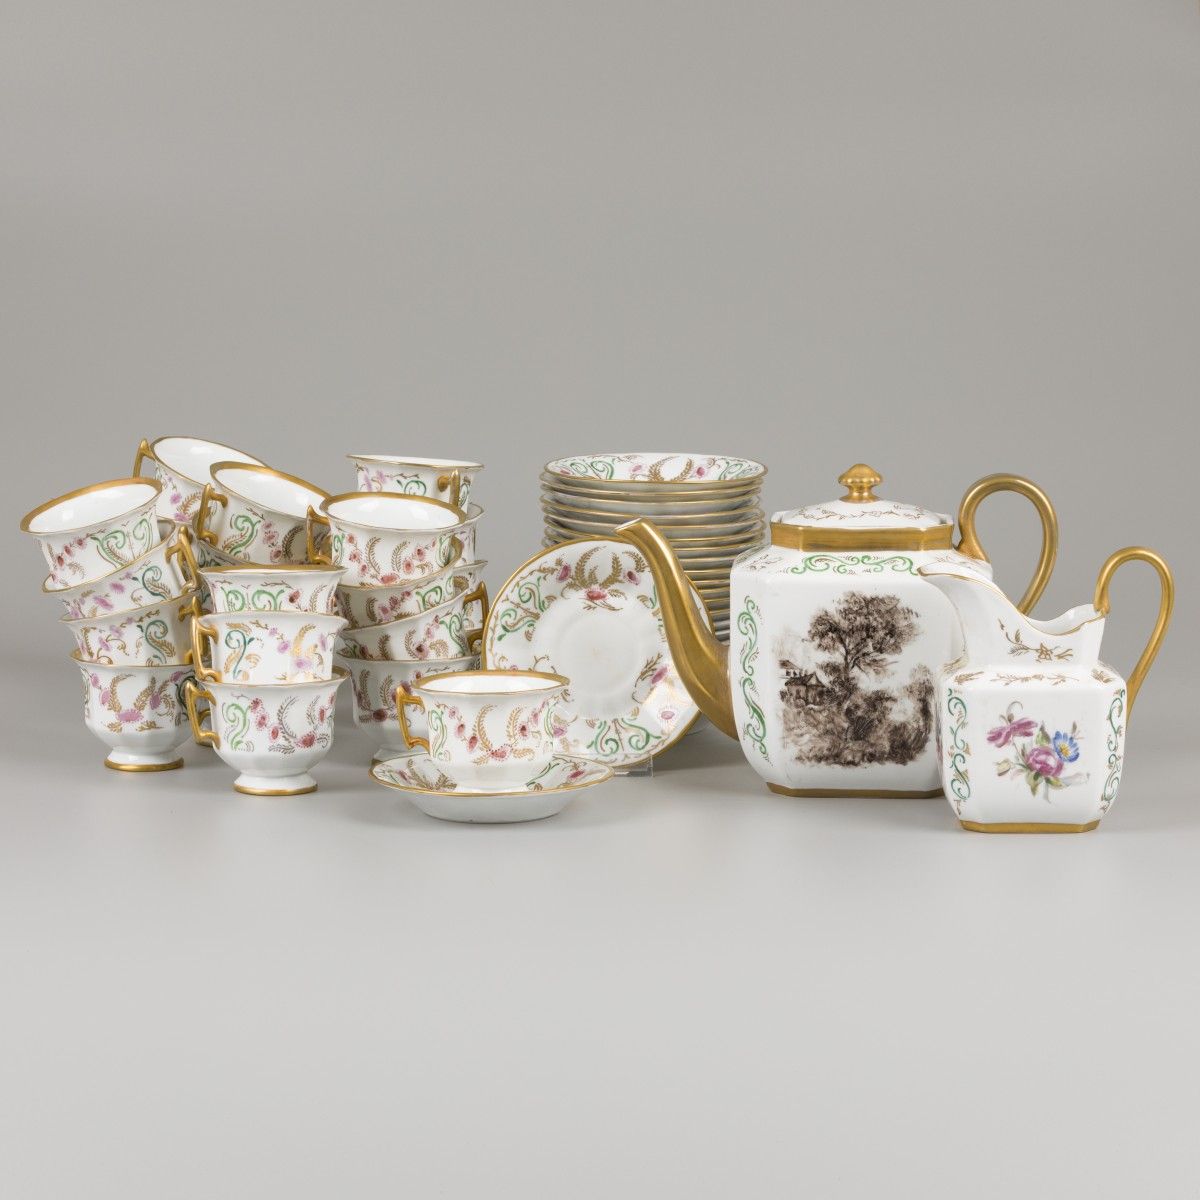 A (26) piece porcelain service with floral decor. France, 19th century. Estimate&hellip;